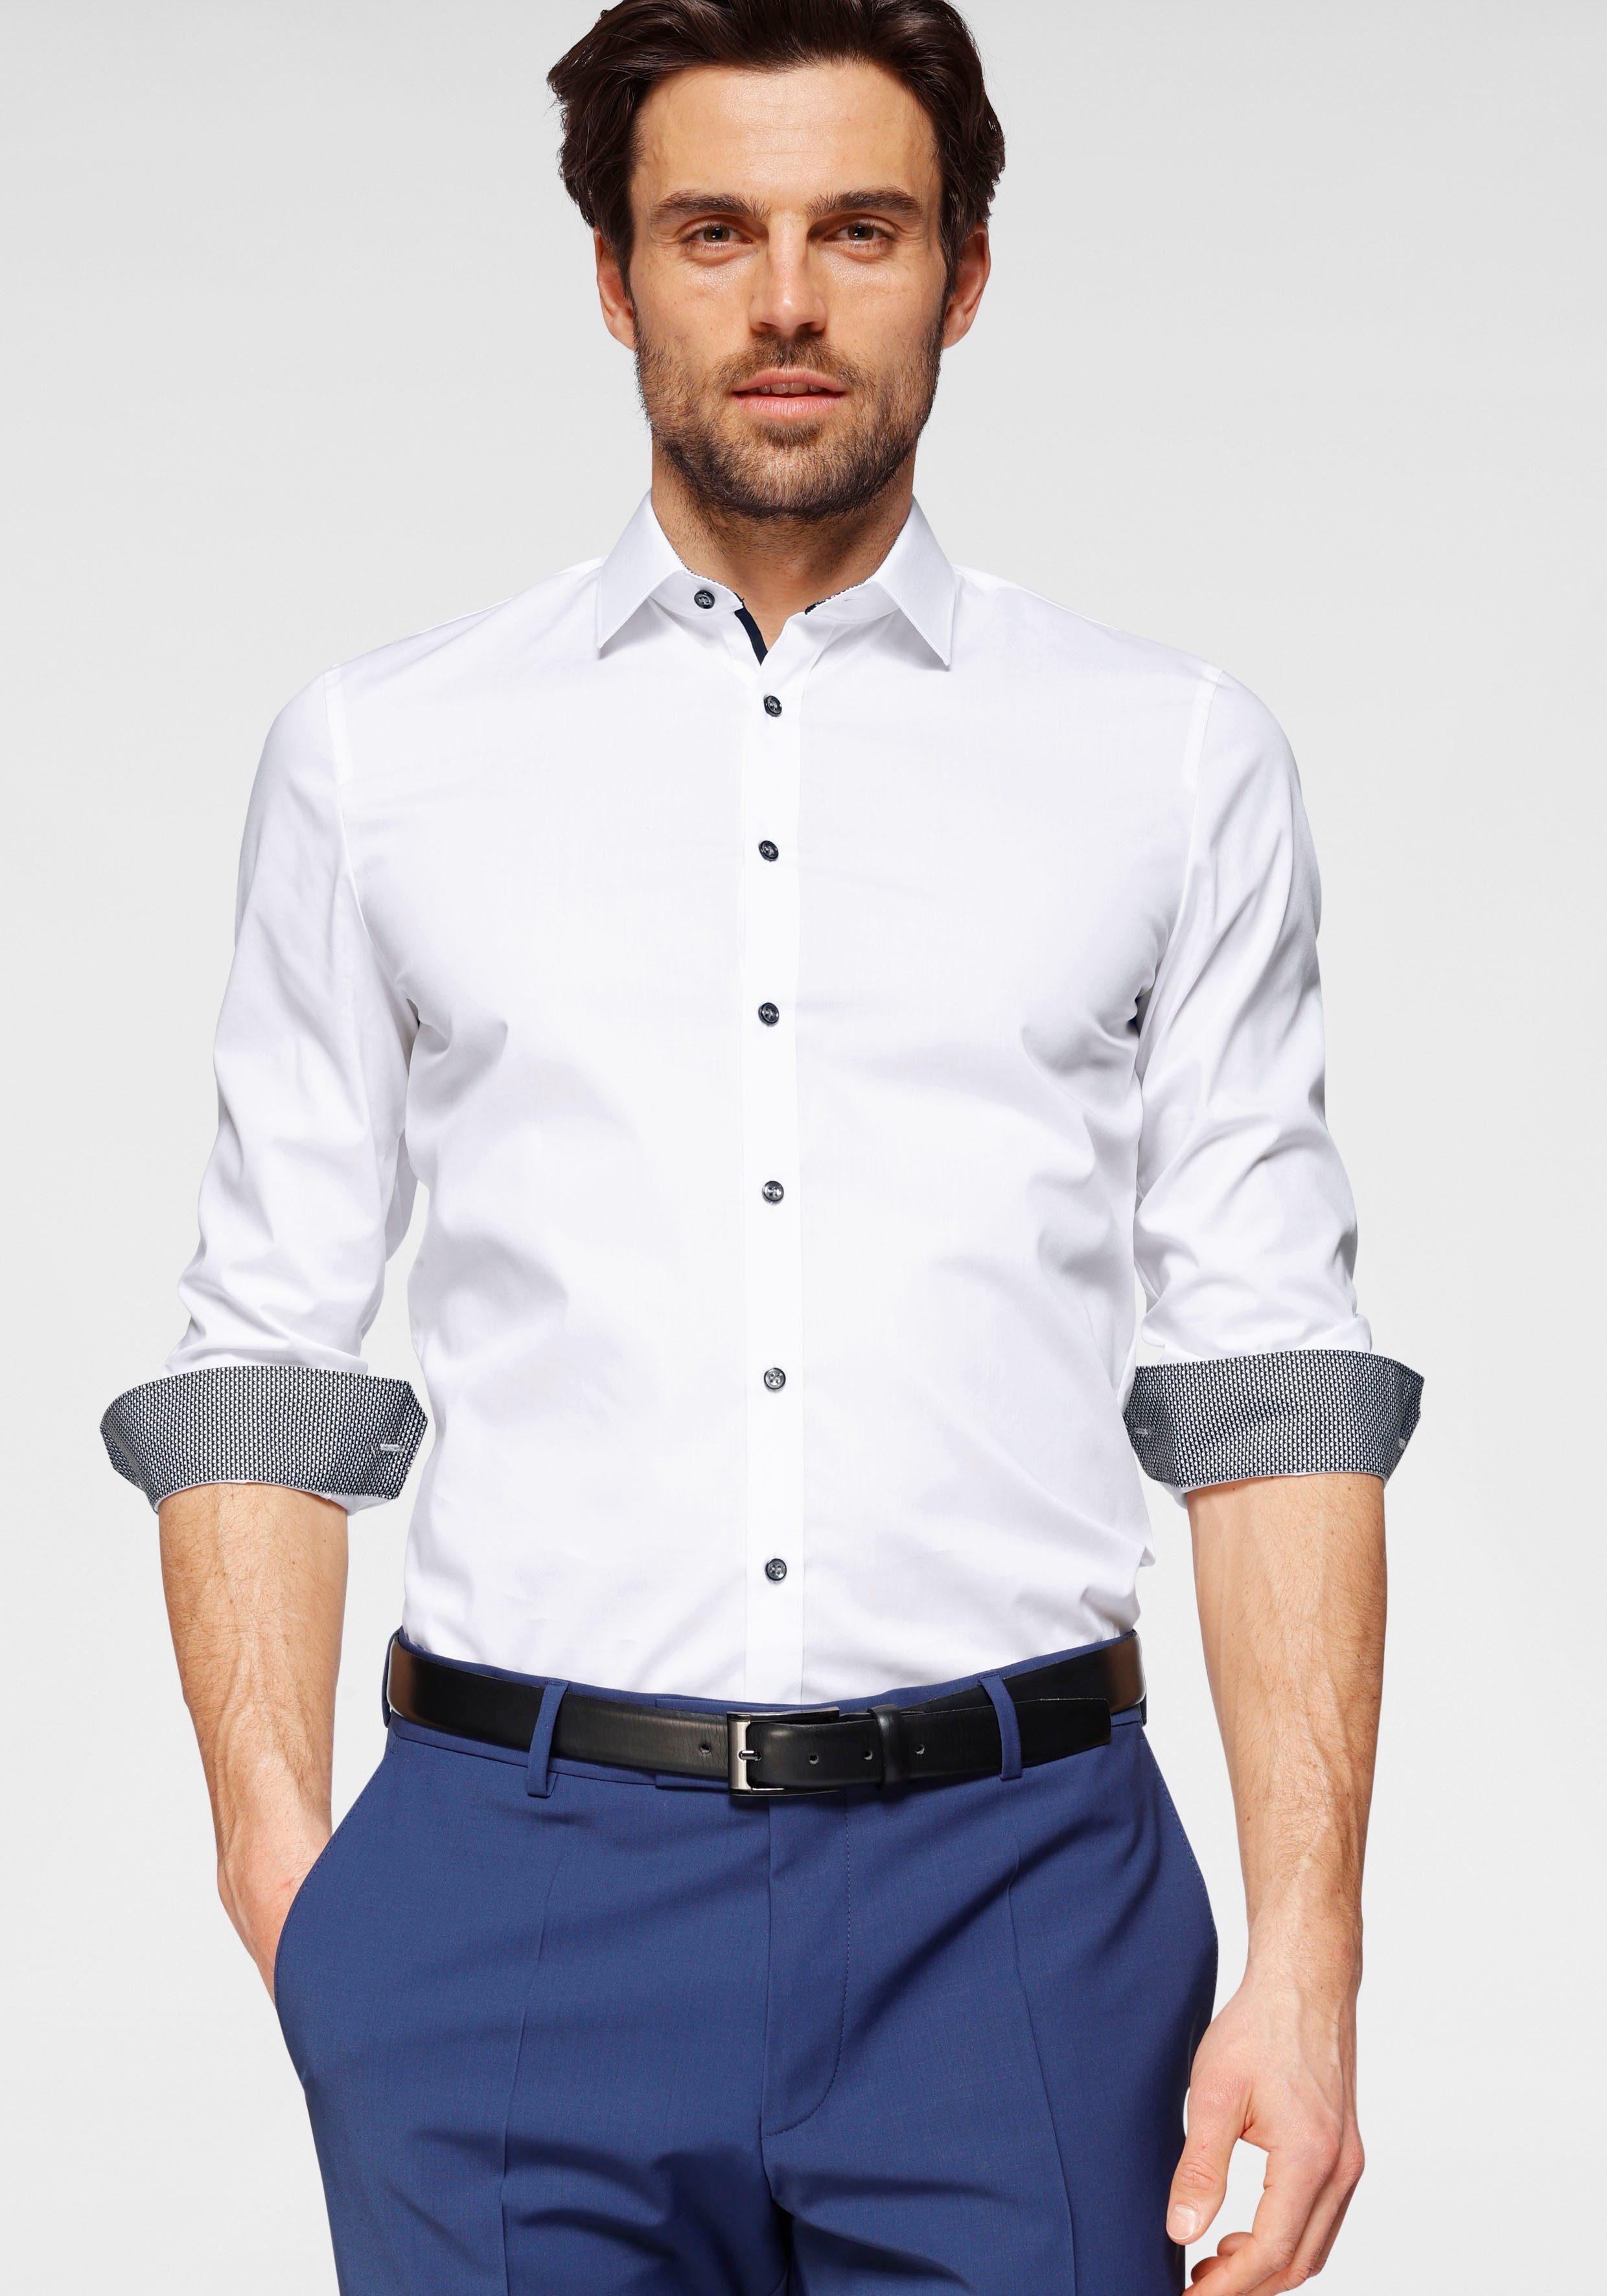 Neueste Ware eingetroffen OLYMP Businesshemd No. Comfort slim, super Six Details super bügelleicht weiß-anthrazit-kontrastfarbene Stretch, slim